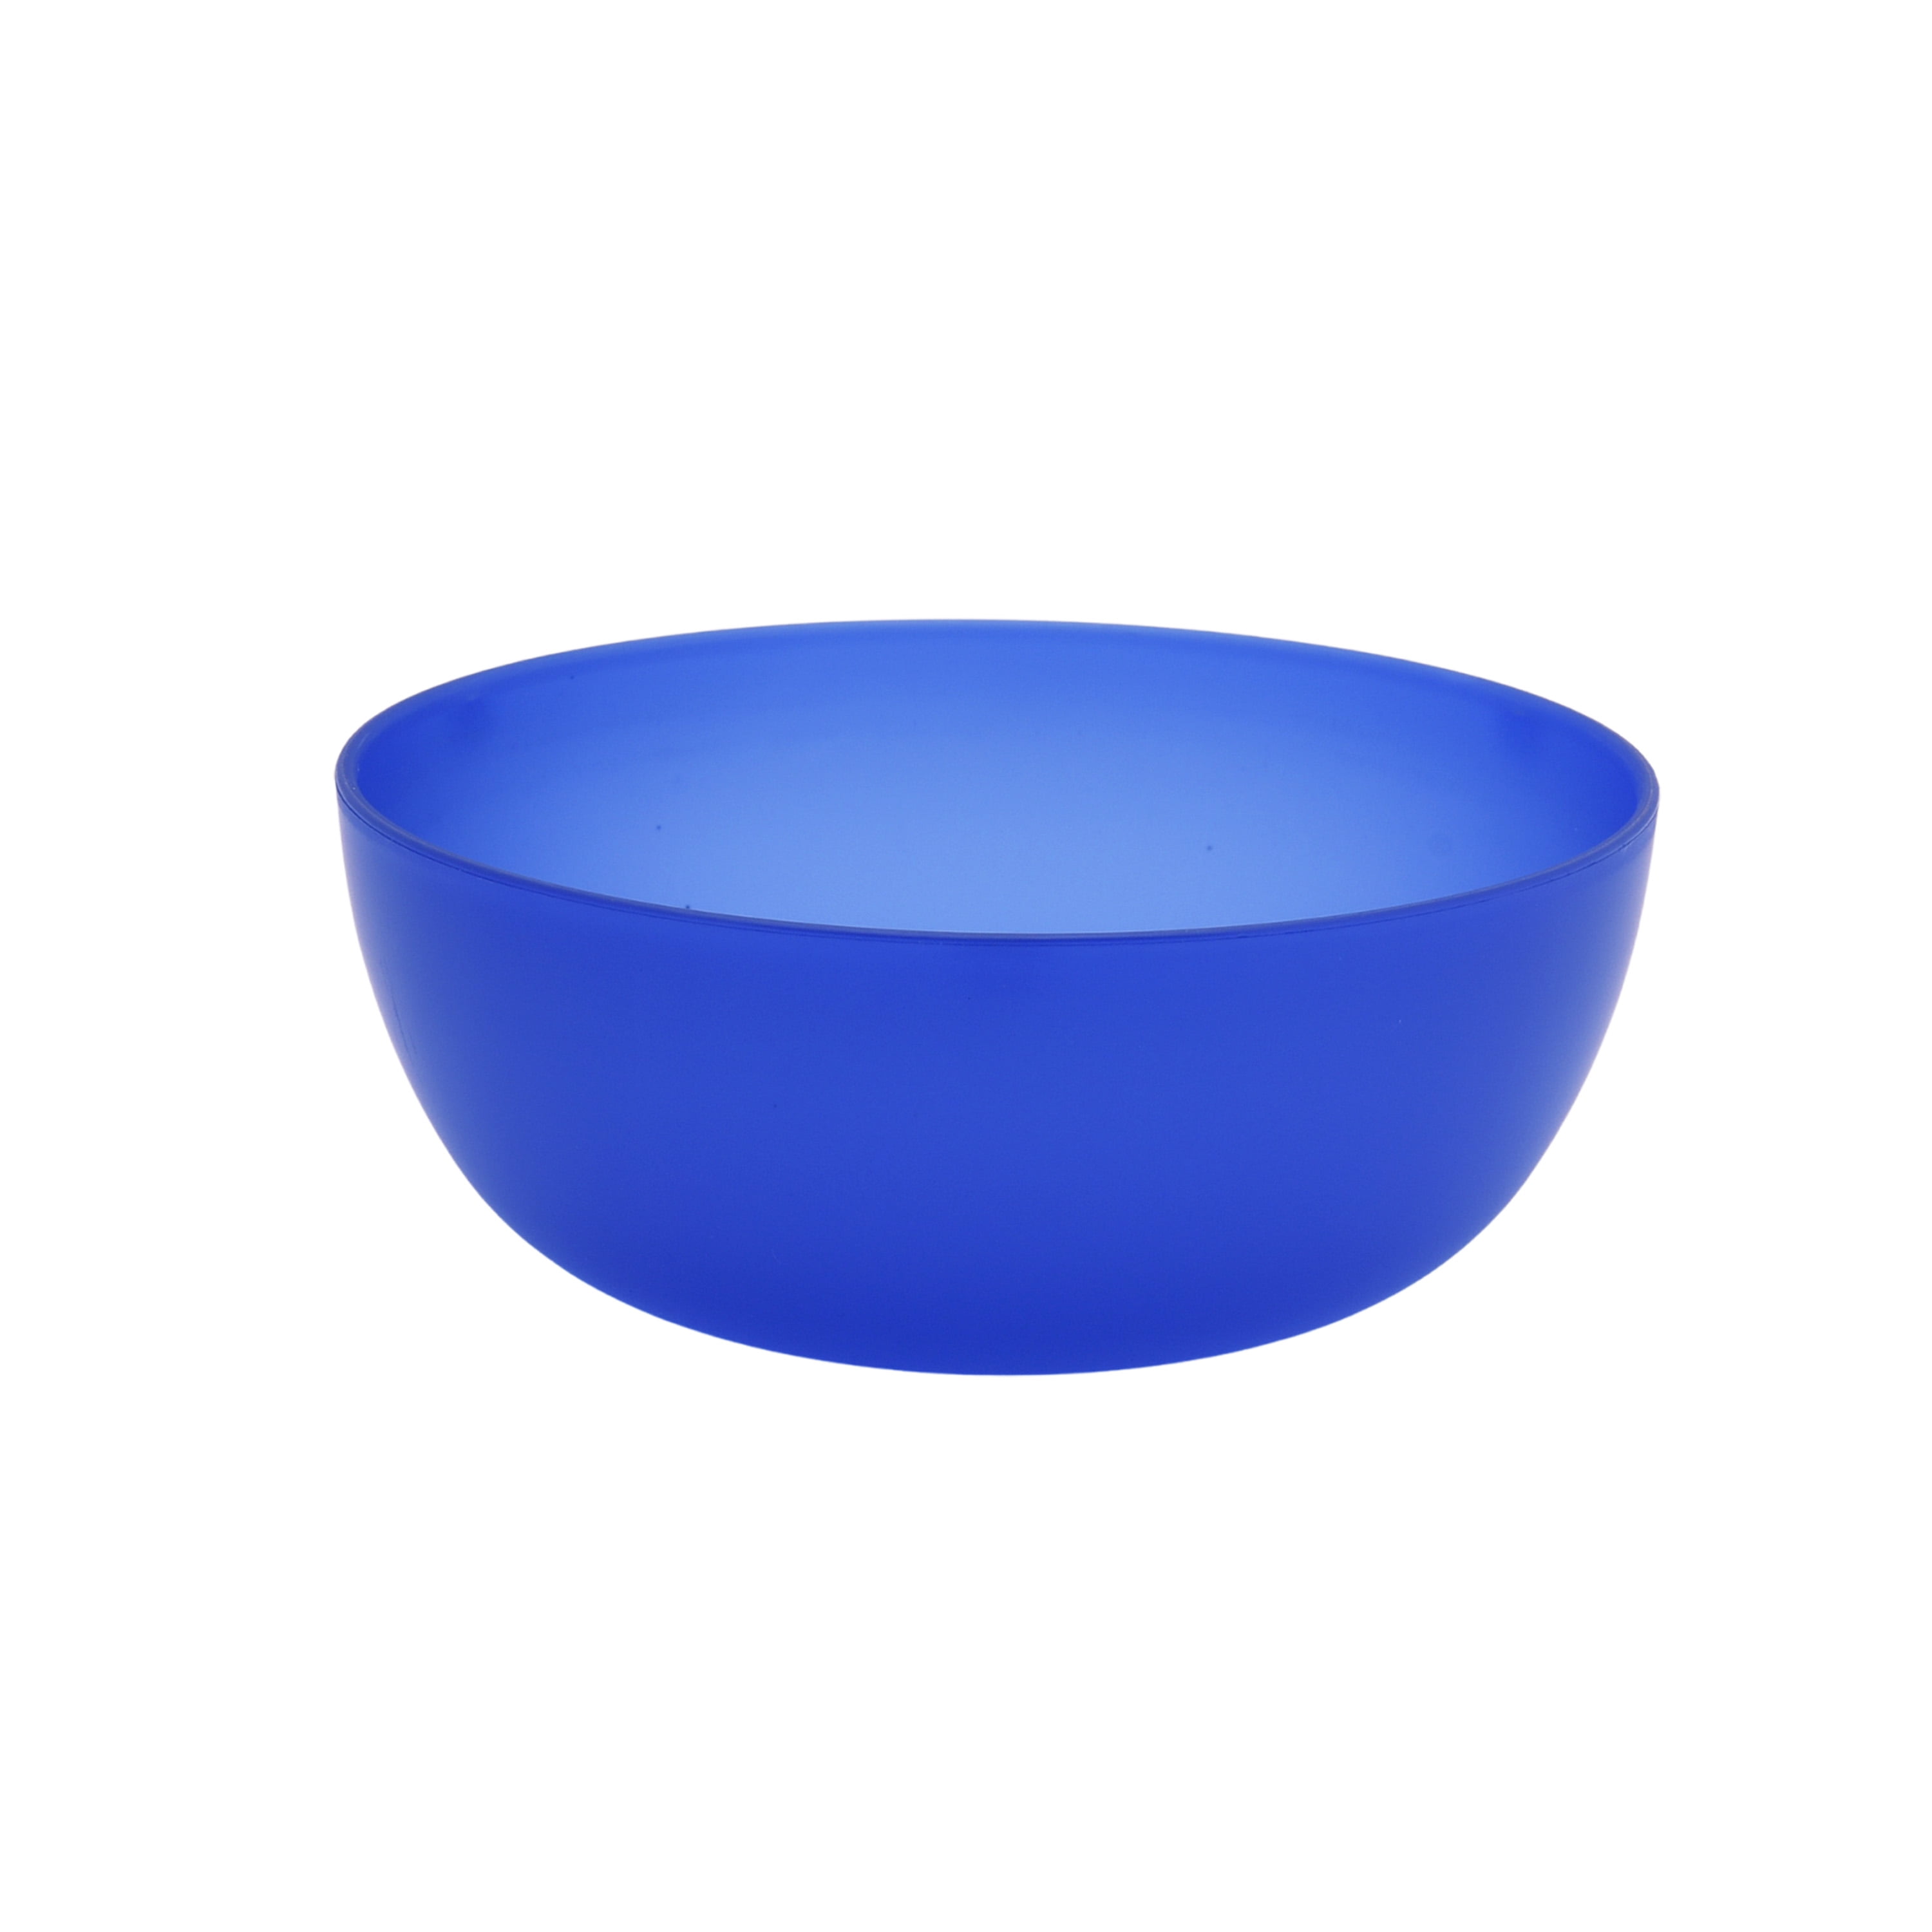 Mainstays - Blue Round Plastic Bowl, 38-Ounce - Walmart.com